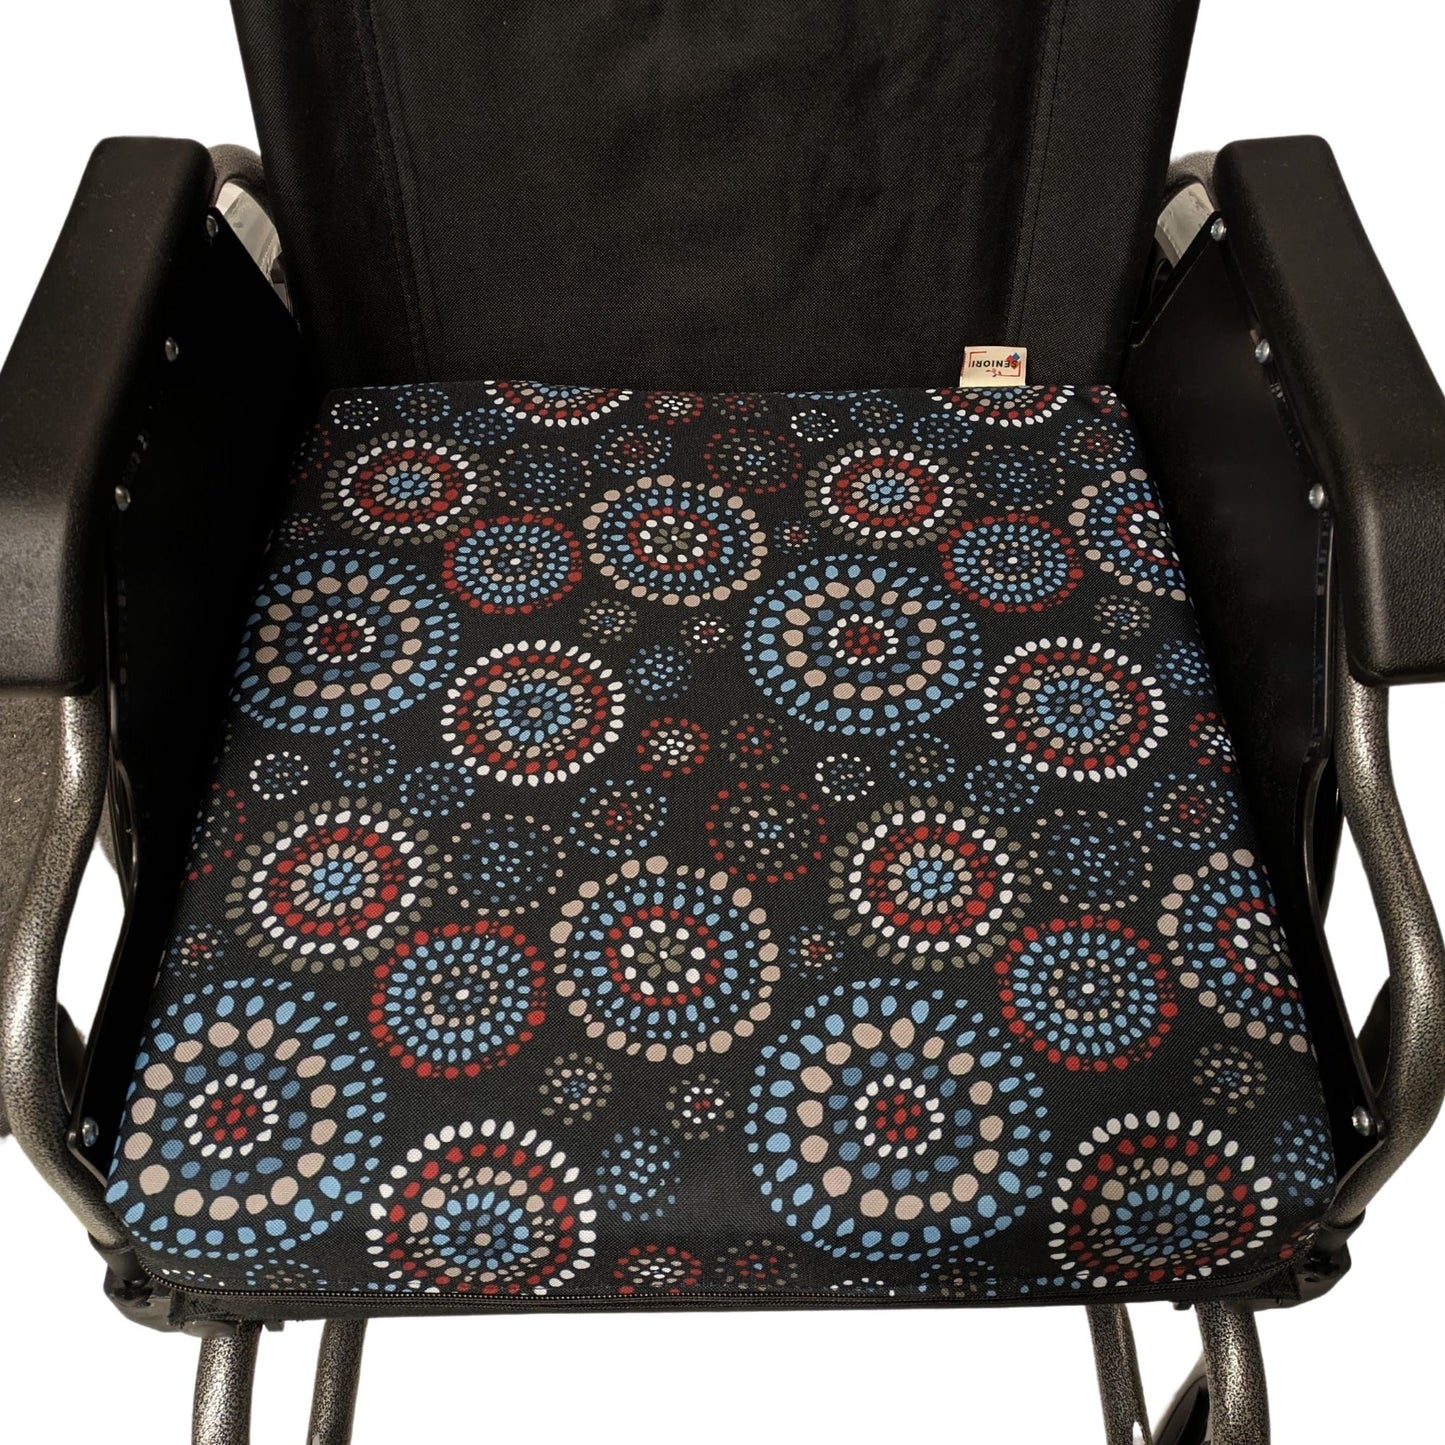 SENIORI Rollstuhlkissen Sitzkissen für Rollstuhl Sitzerhöhungv 42 x 42 x 8 cm Antidekubitus Kissen mit doppelter Schaumstoffschicht (1K. Kreise)